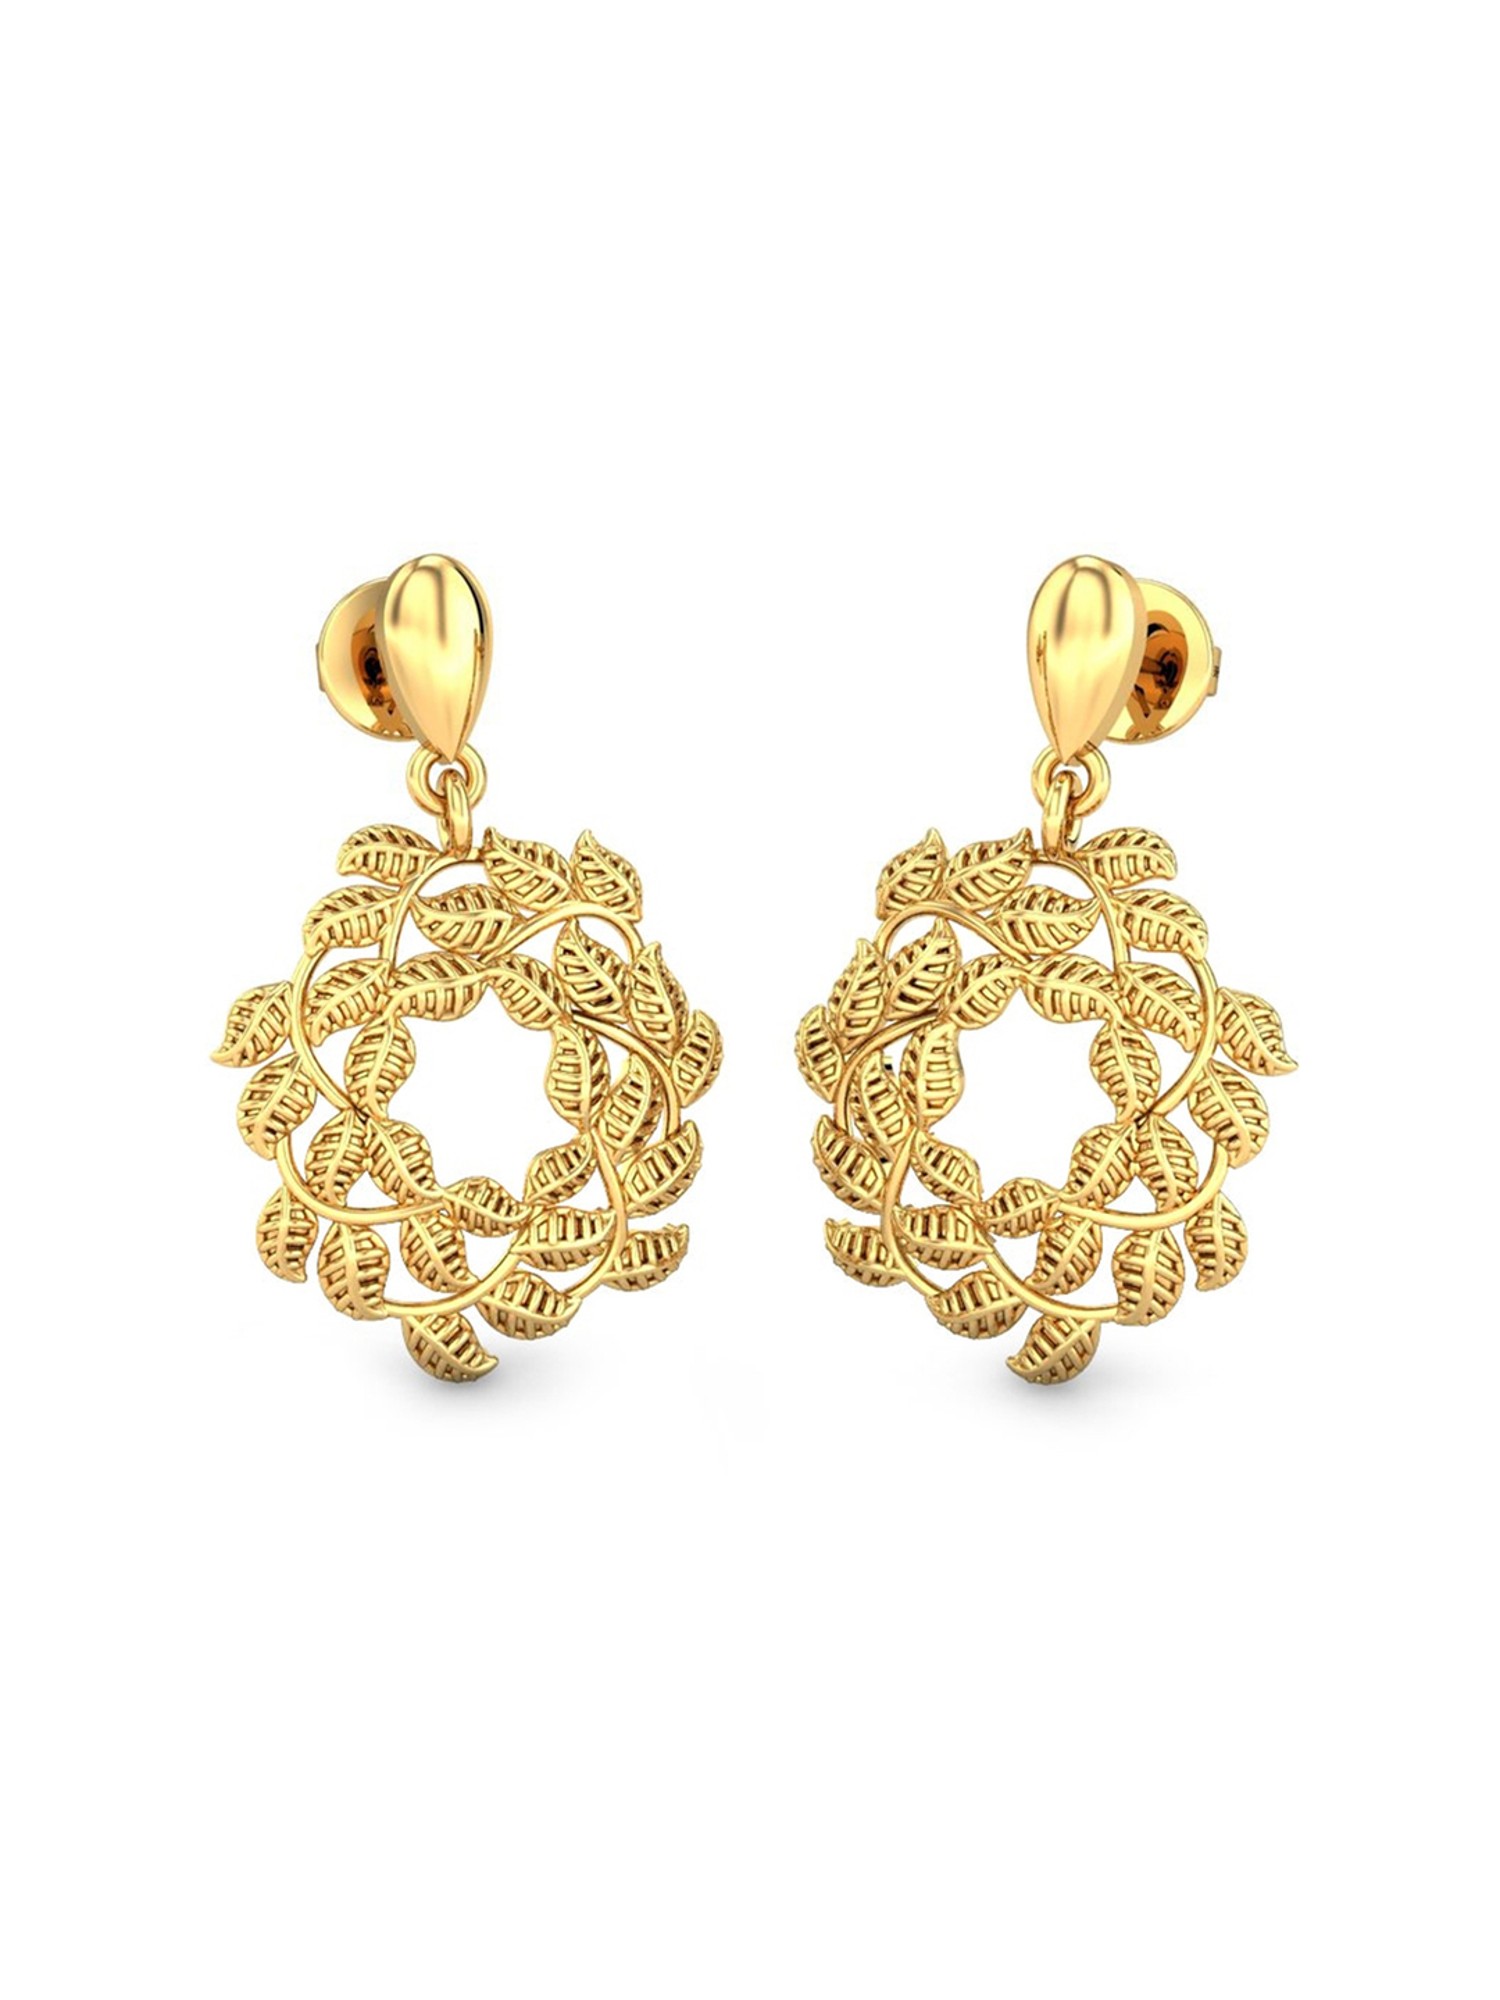 Gold earrings  Earrings for women in gold  New designs of earrings